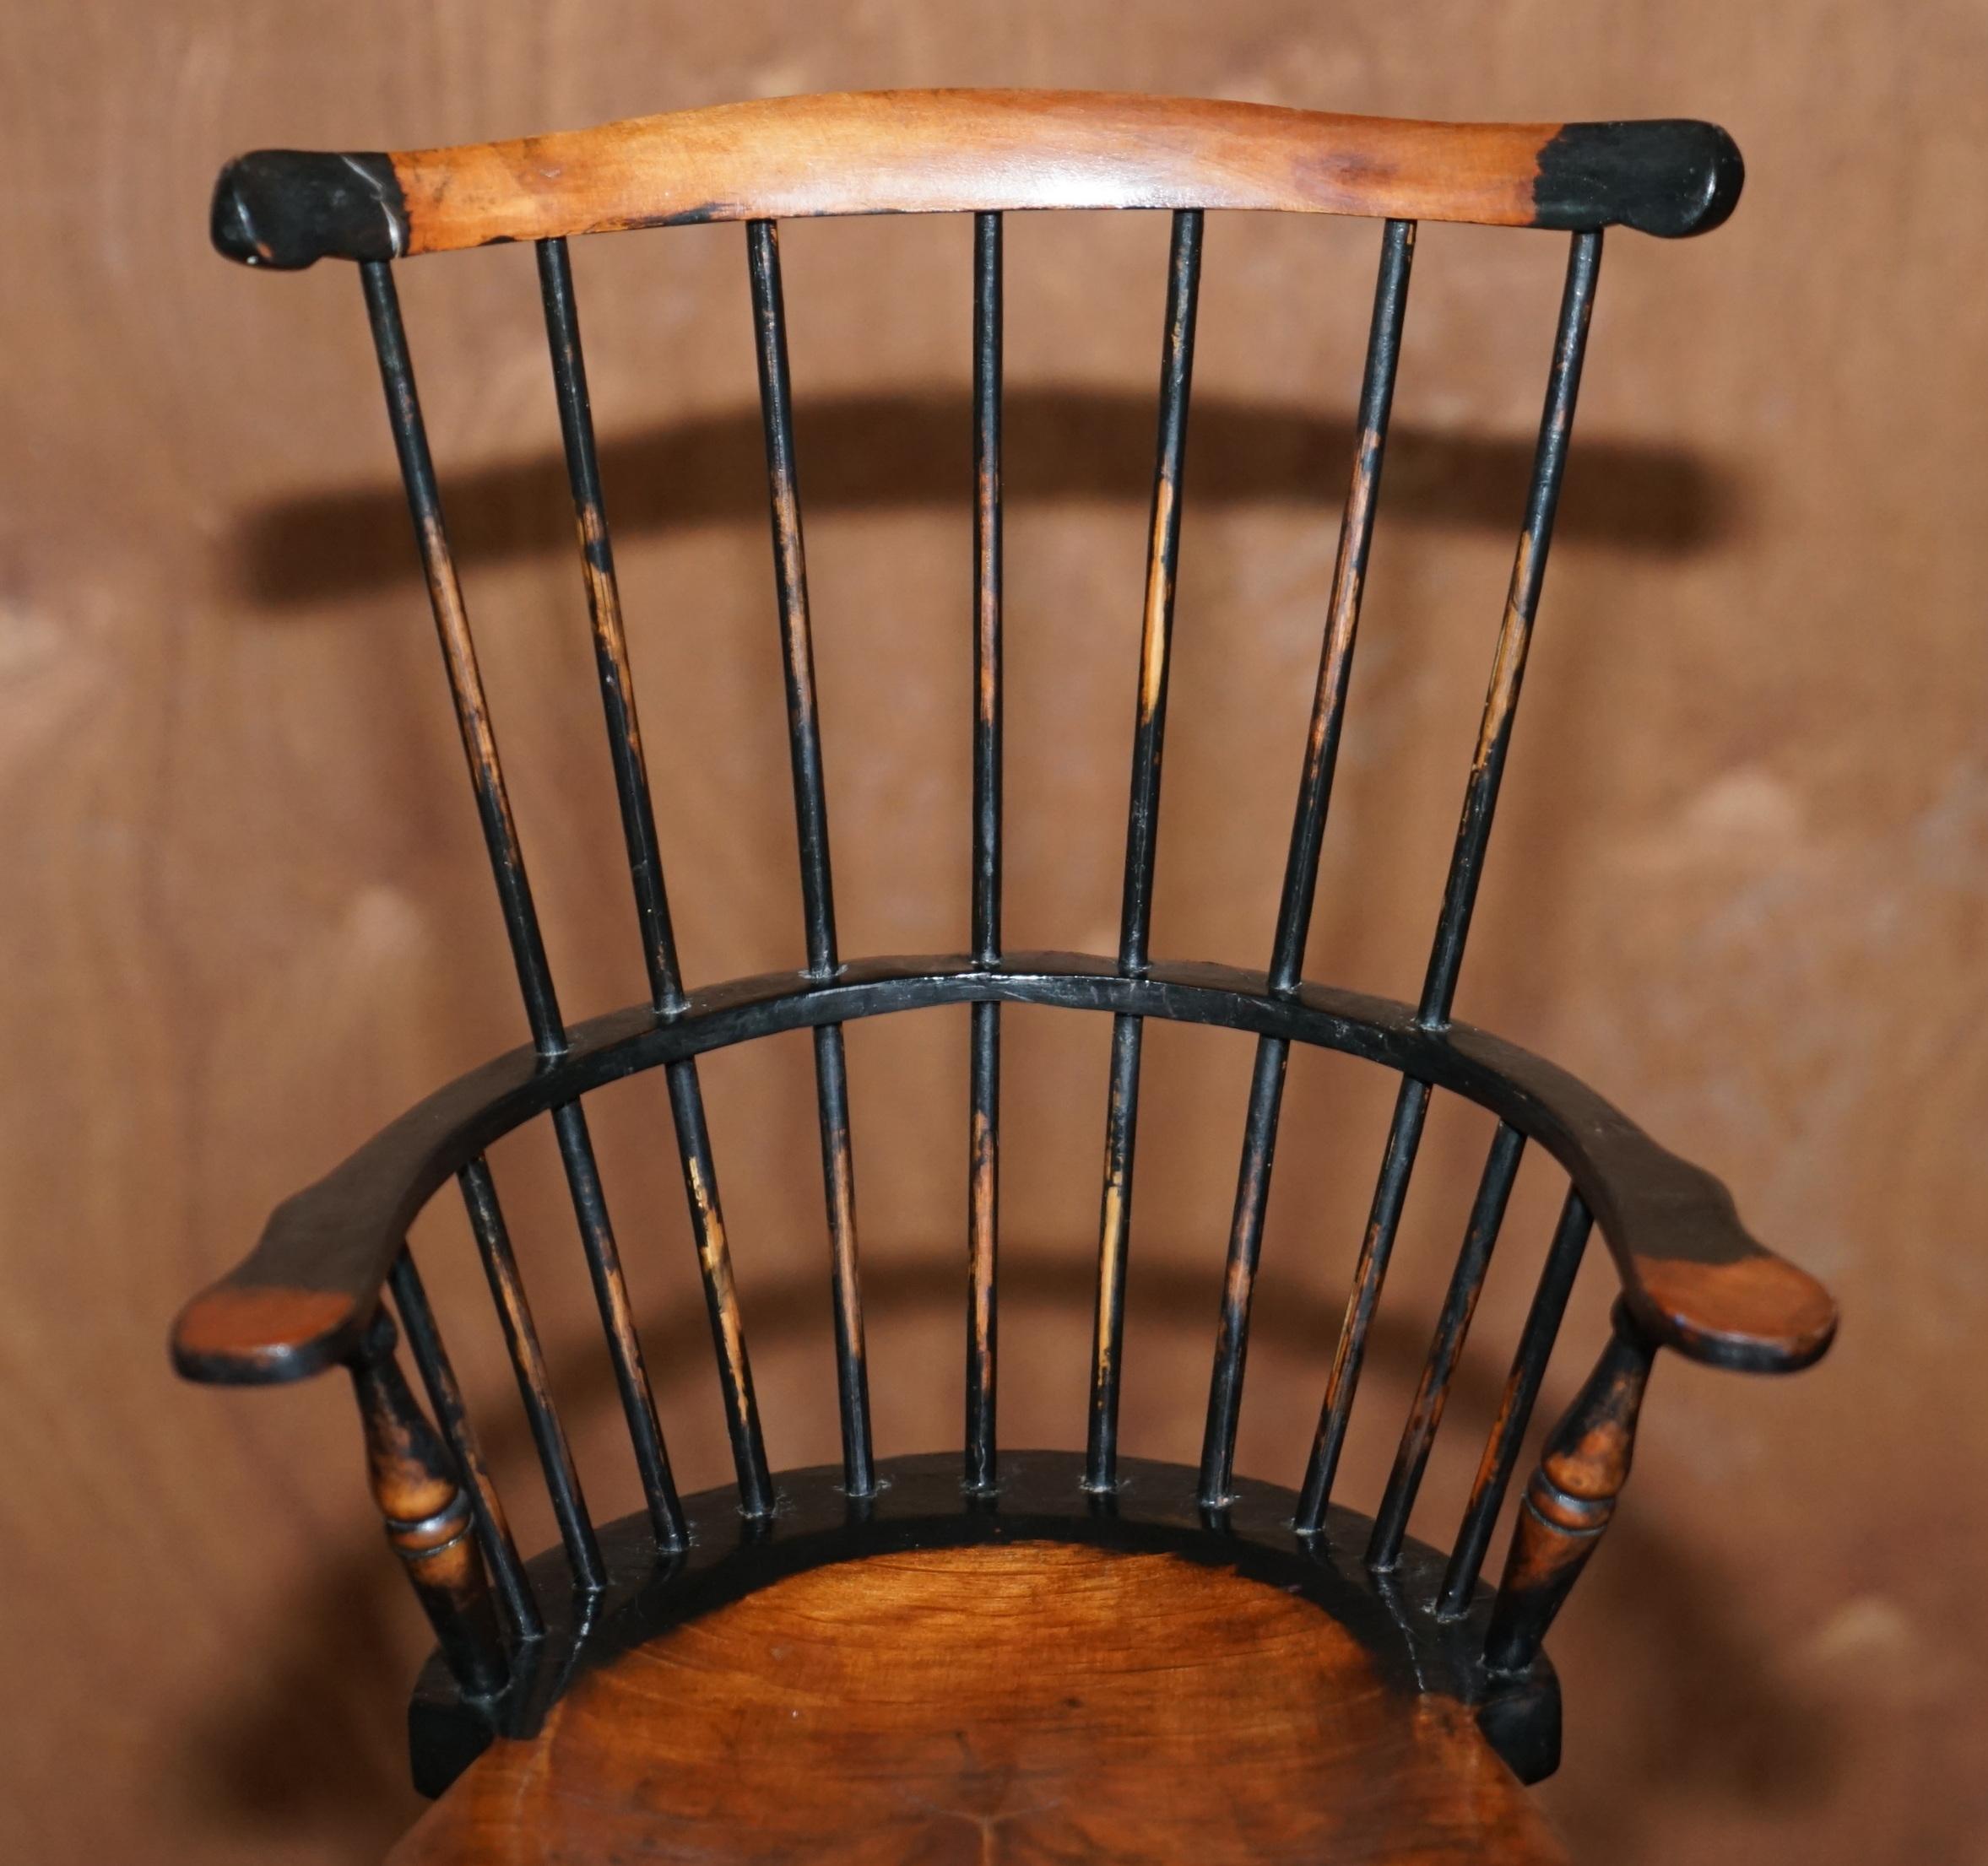 Fait main Miniature Antique Comb Back Windsor Armchair Based on the 18th Century Design (Fauteuil Windsor miniature à dossier en peigne d'après le design du 18ème siècle) en vente